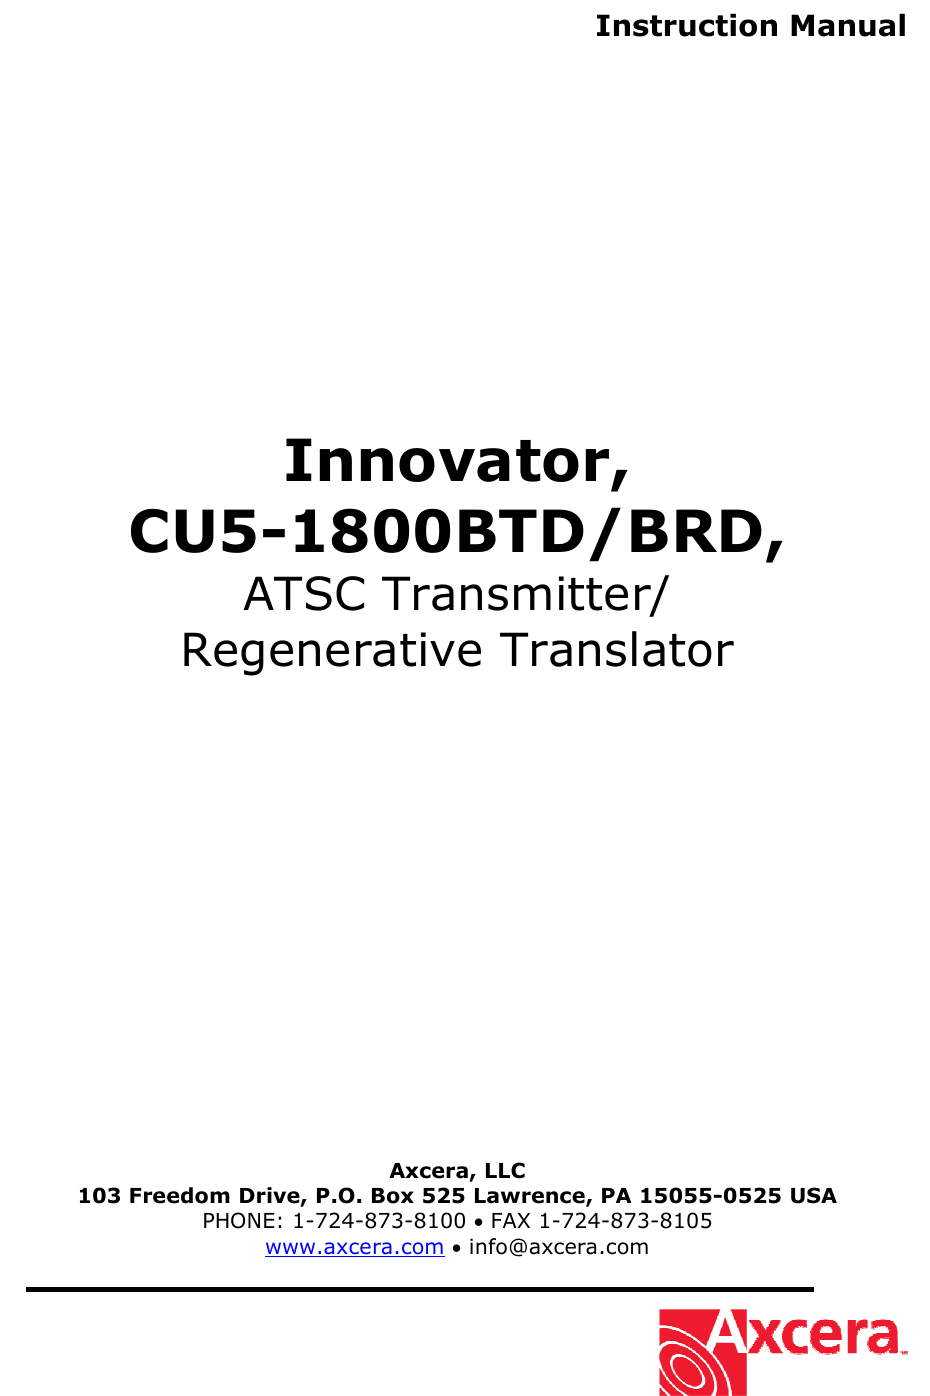  Instruction Manual                Innovator, CU5-1800BTD/BRD, ATSC Transmitter/ Regenerative Translator                    Axcera, LLC 103 Freedom Drive, P.O. Box 525 Lawrence, PA 15055-0525 USA PHONE: 1-724-873-8100 • FAX 1-724-873-8105 www.axcera.com • info@axcera.com     